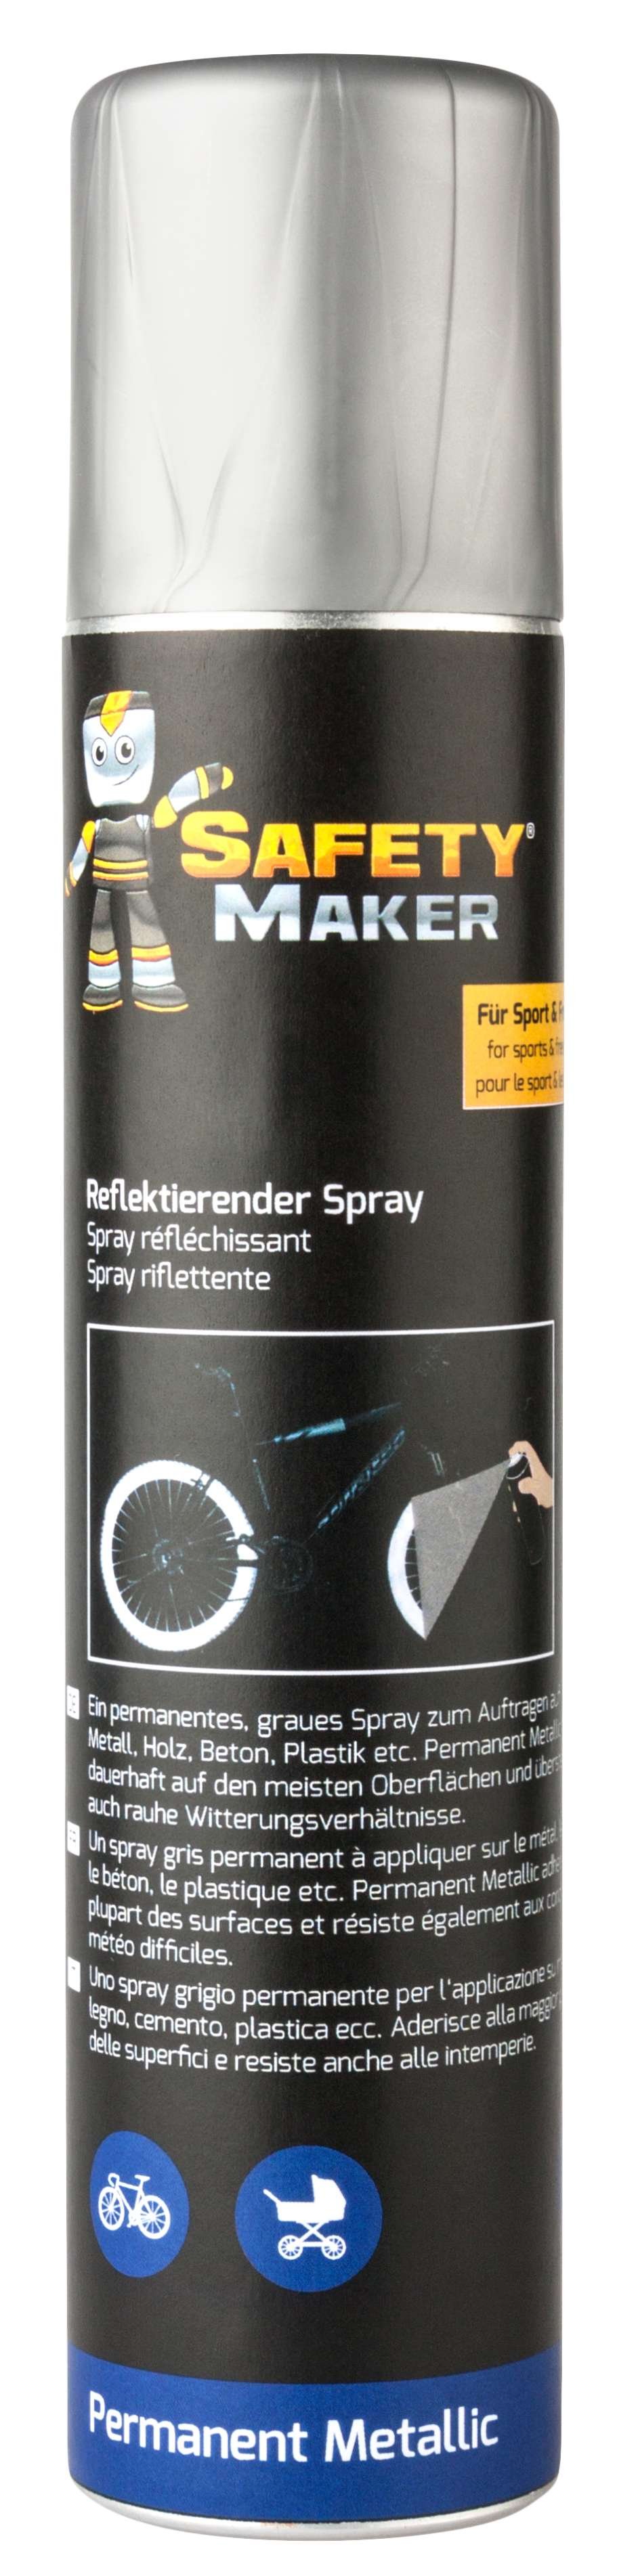 Safety Maker Reflektierender Spray Permanent Metallic 200 ml